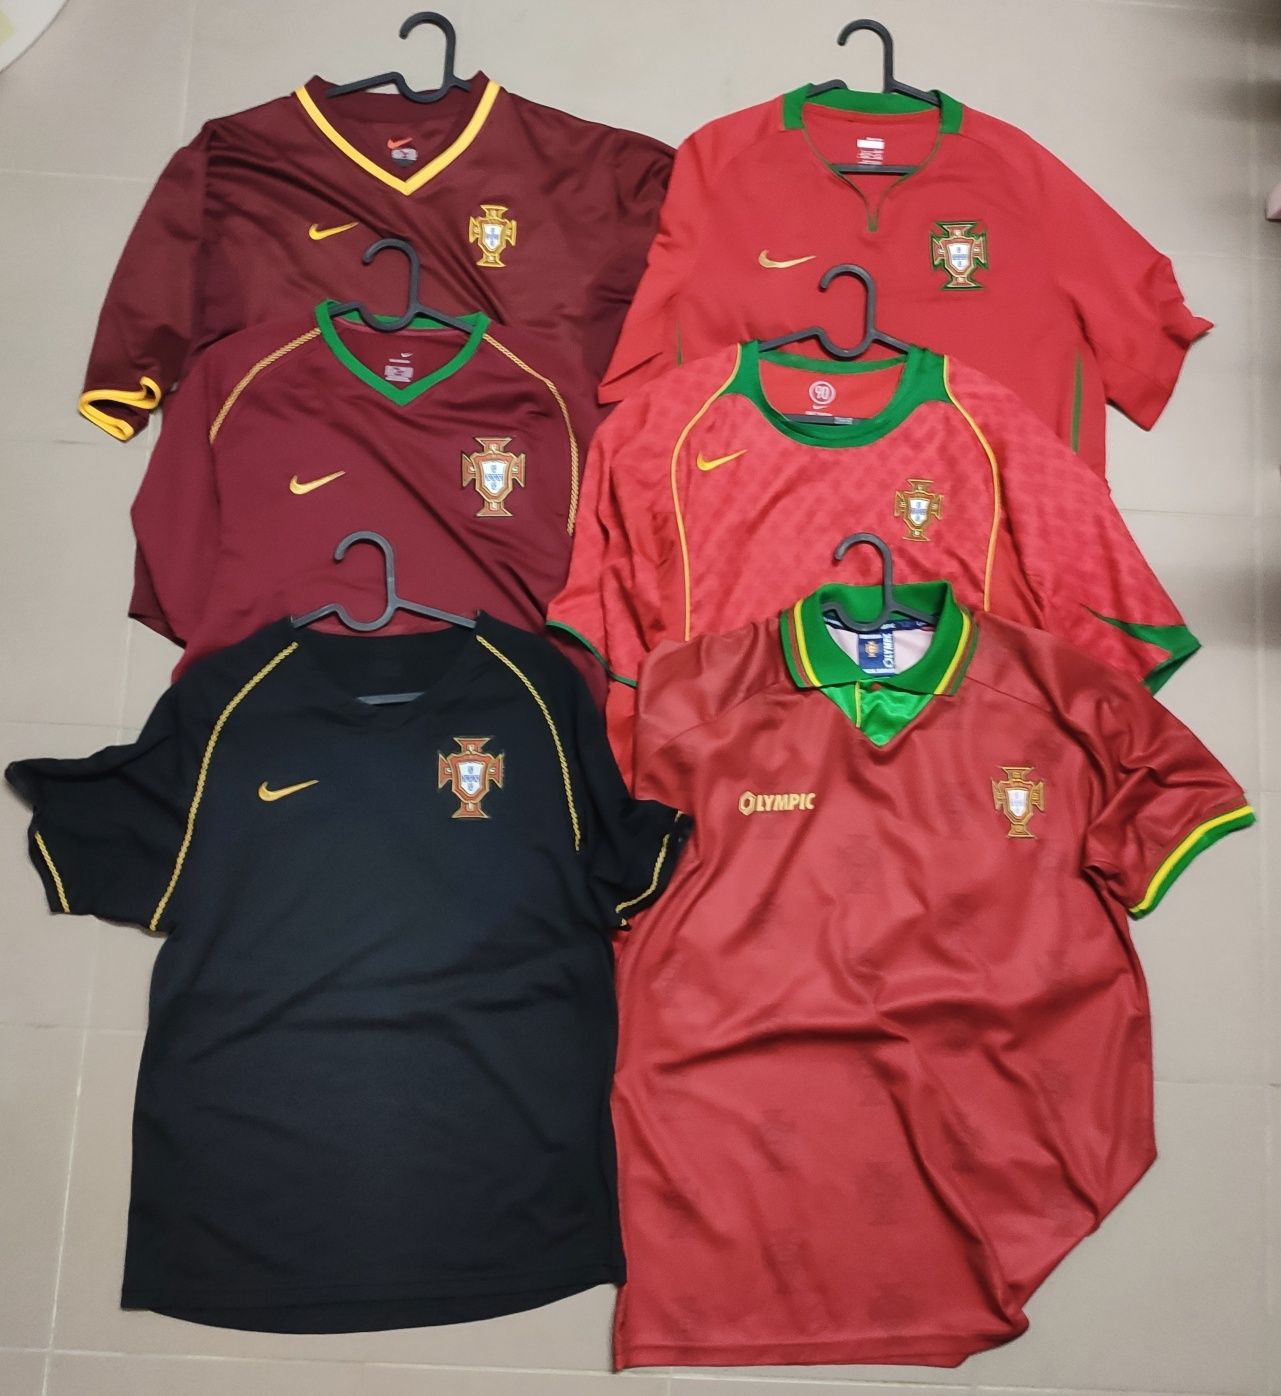 Camisolas selecção de Portugal seleção portuguesa futebol vermelhas